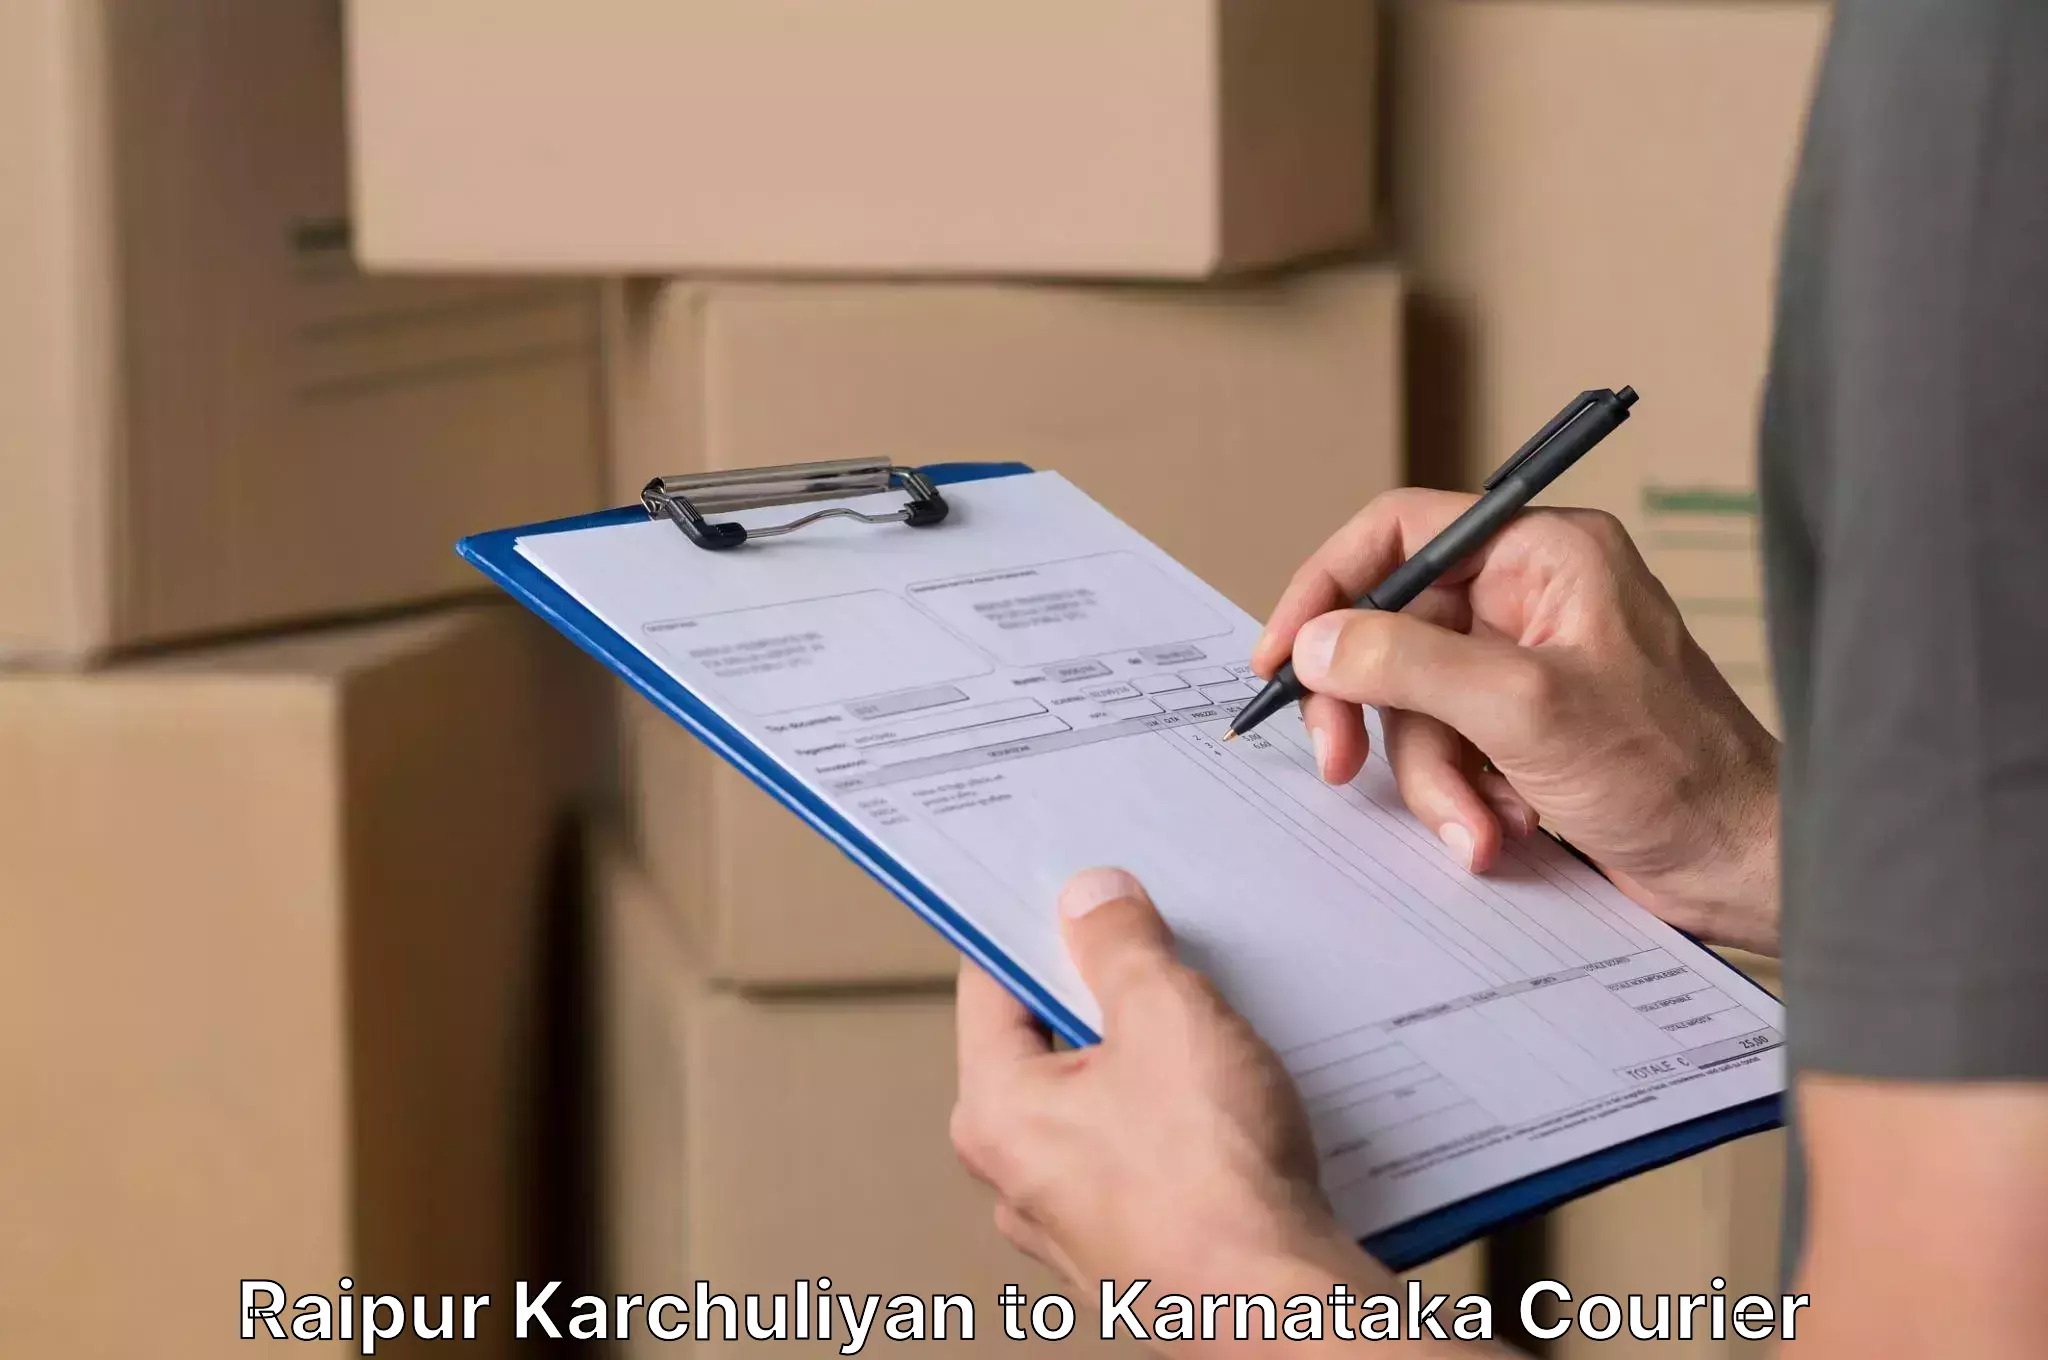 Moving and handling services Raipur Karchuliyan to Ankola